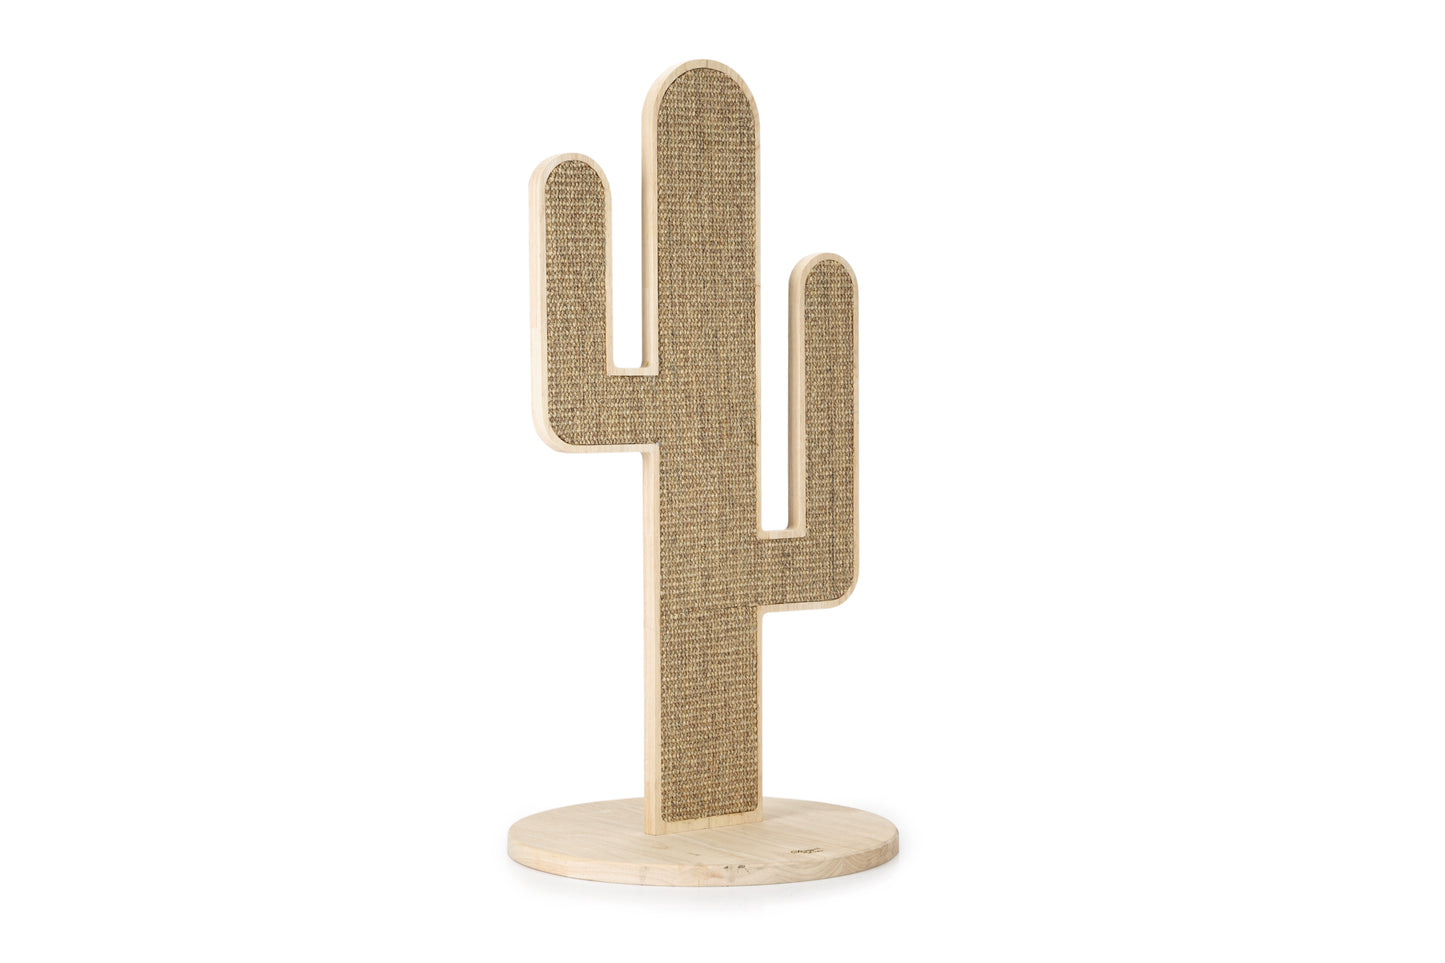 Waarschijnlijk ken je de super populaire Cactus krabpaal van het topmerk Designed by Lotte al? Daar hebben we nu een variant van opgenomen in ons aanbod, namelijk de Cactus Oze Krabpaal.  Deze krabpaal is van hetzelfde topmerk, maar net een beetje anders, doordat deze cactus plat is in plaats van rond. Het leuke van deze krabpaal is, dat er aan beide kanten kan worden gekrabd en dat de krabpaal mooi staat in ieder interieur!